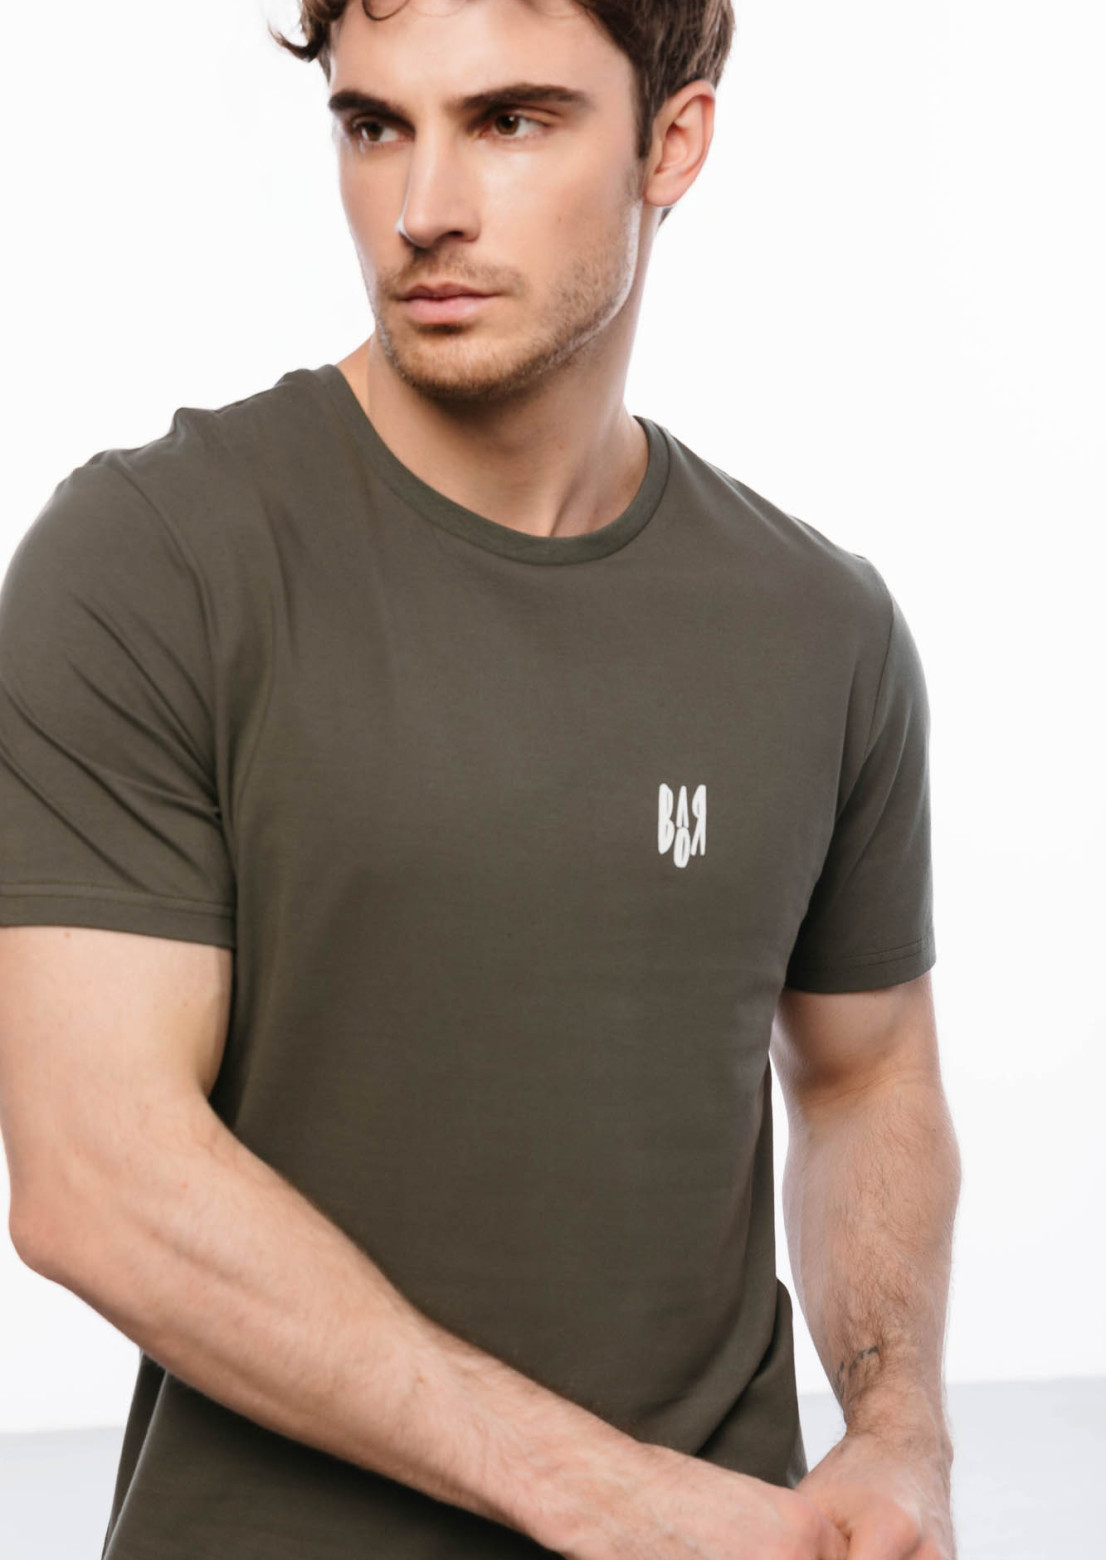 Men's  khaki T-shirt "Воля"